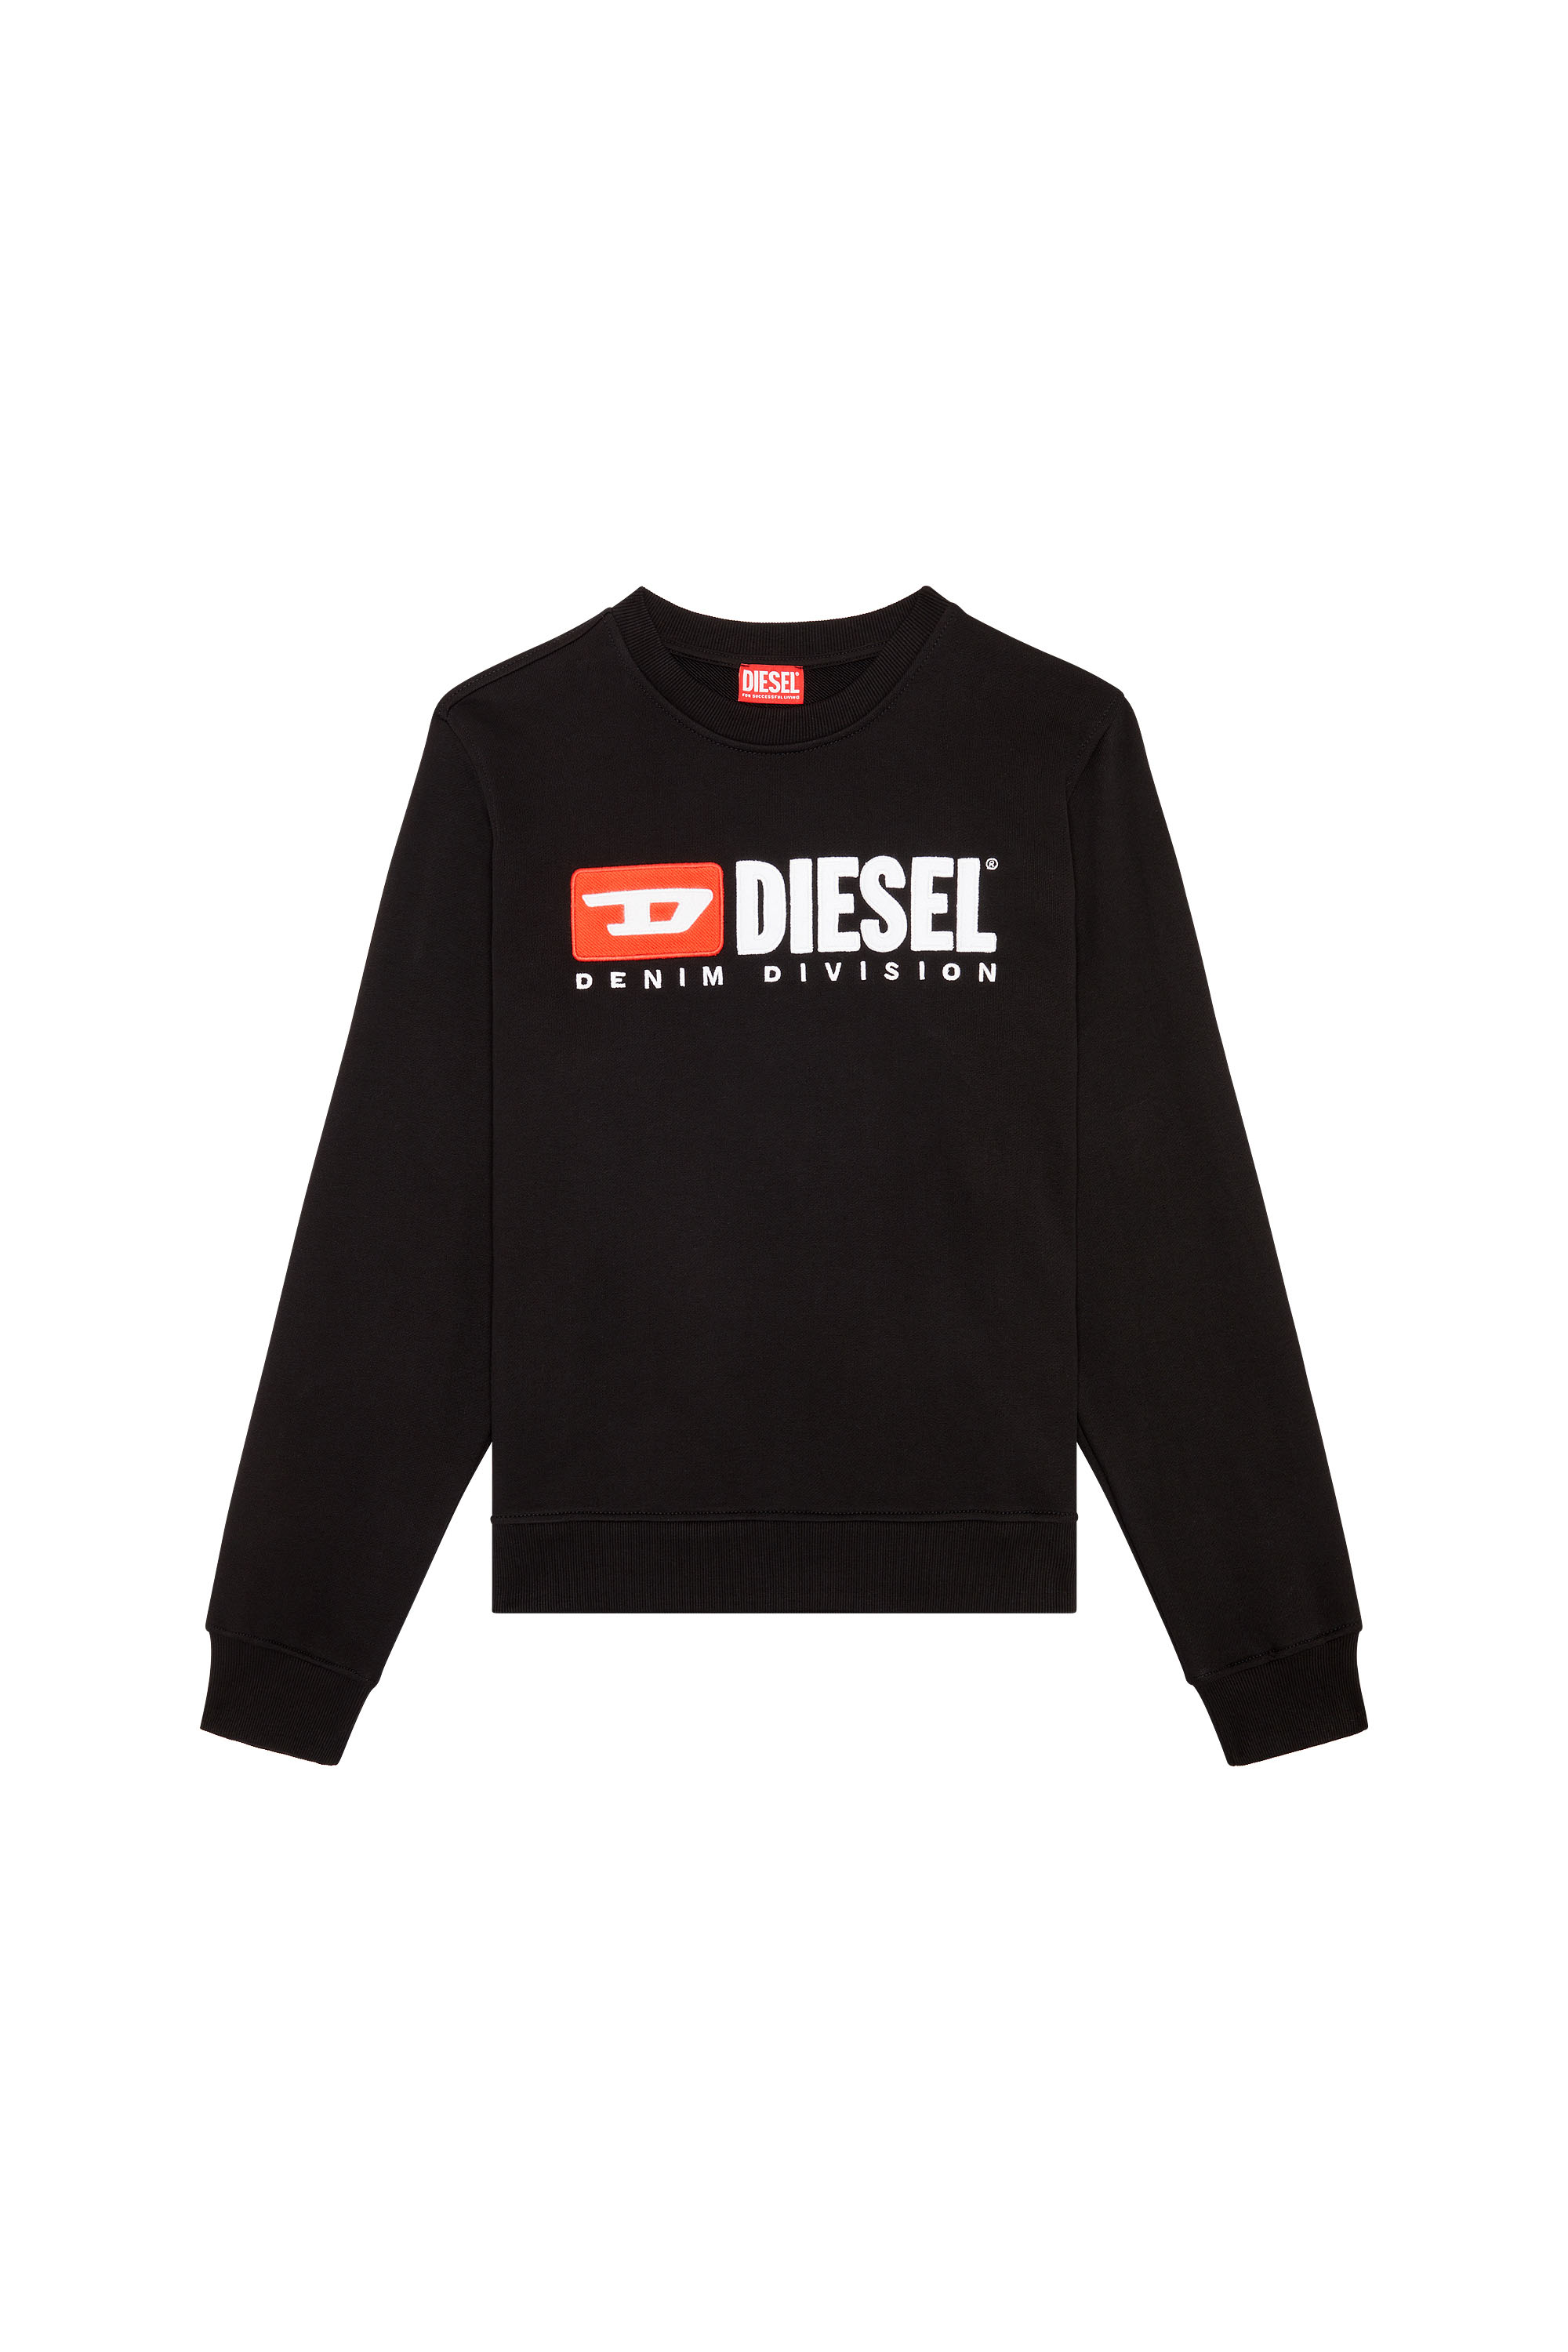 Diesel - S-GINN-DIV, Noir - Image 3